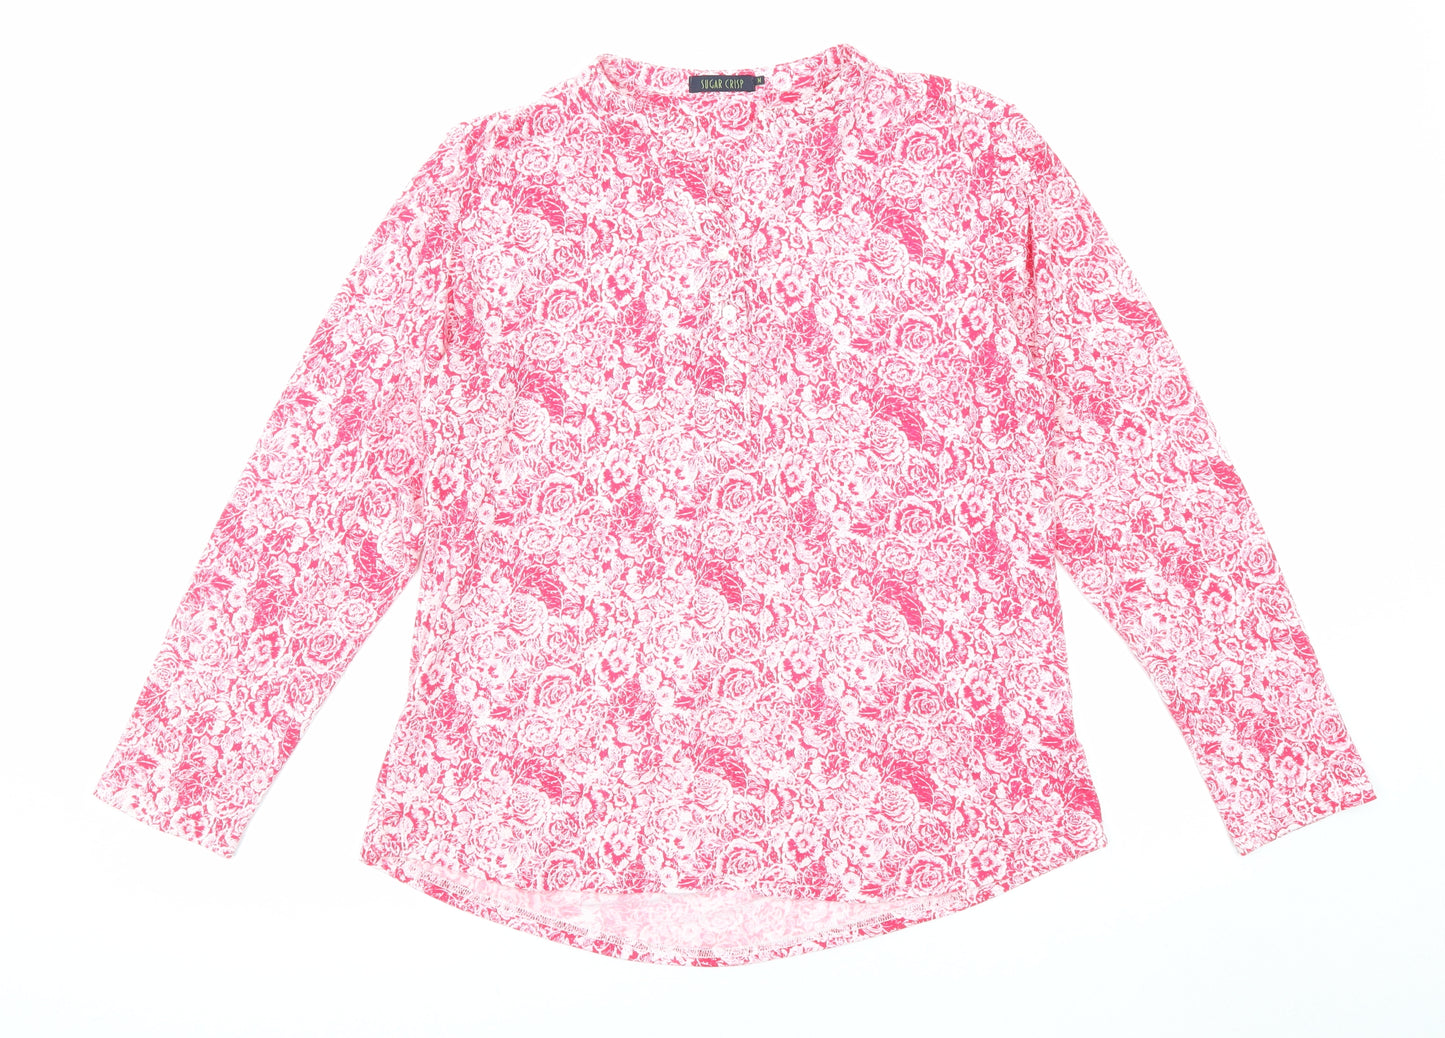 Sugar Crisp Womens Pink Floral Polyester Basic Blouse Size M V-Neck